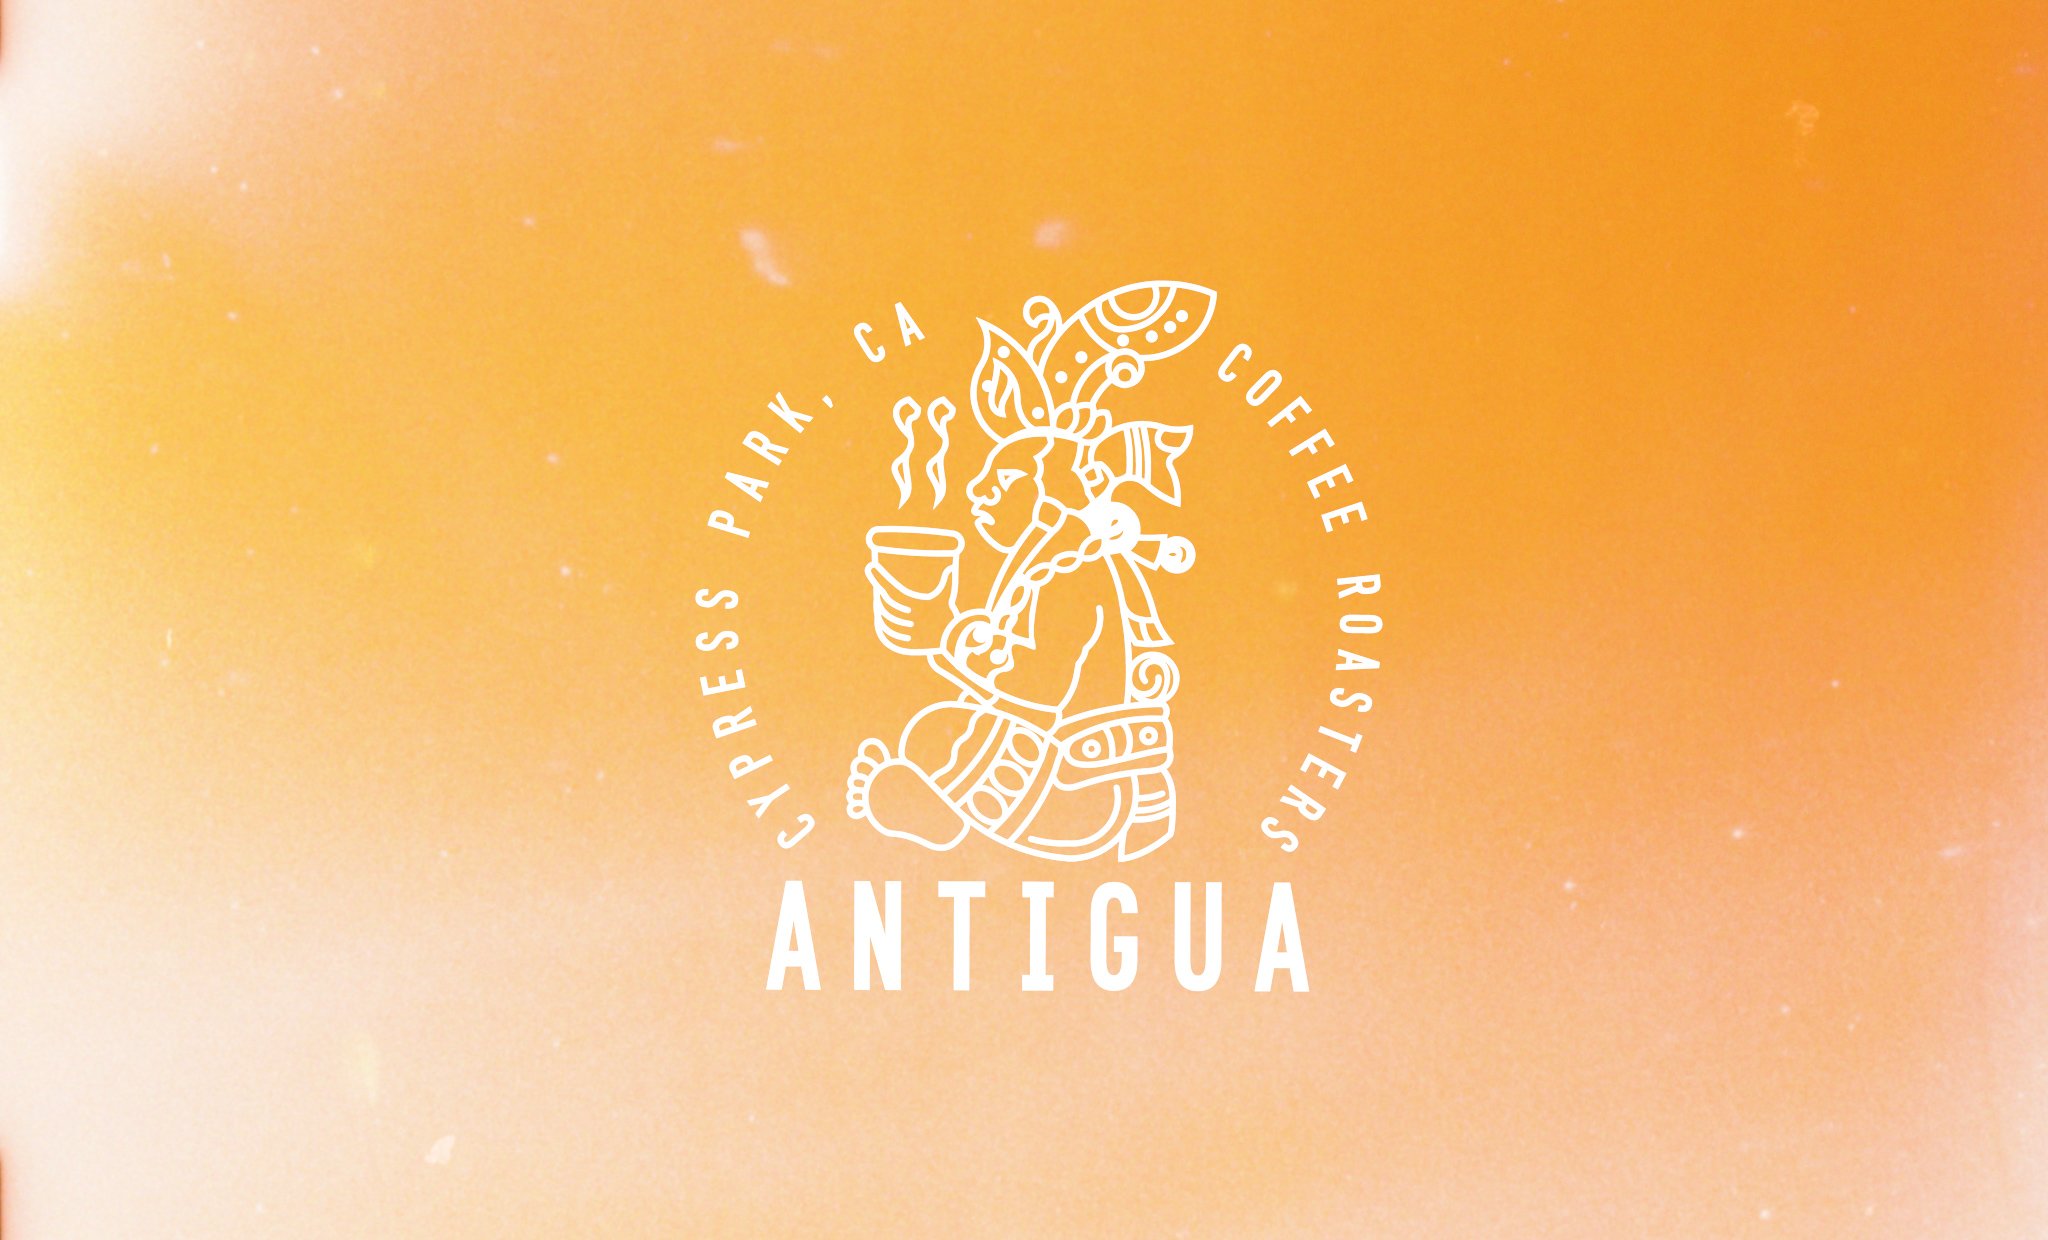 Antigua grade-16.jpg